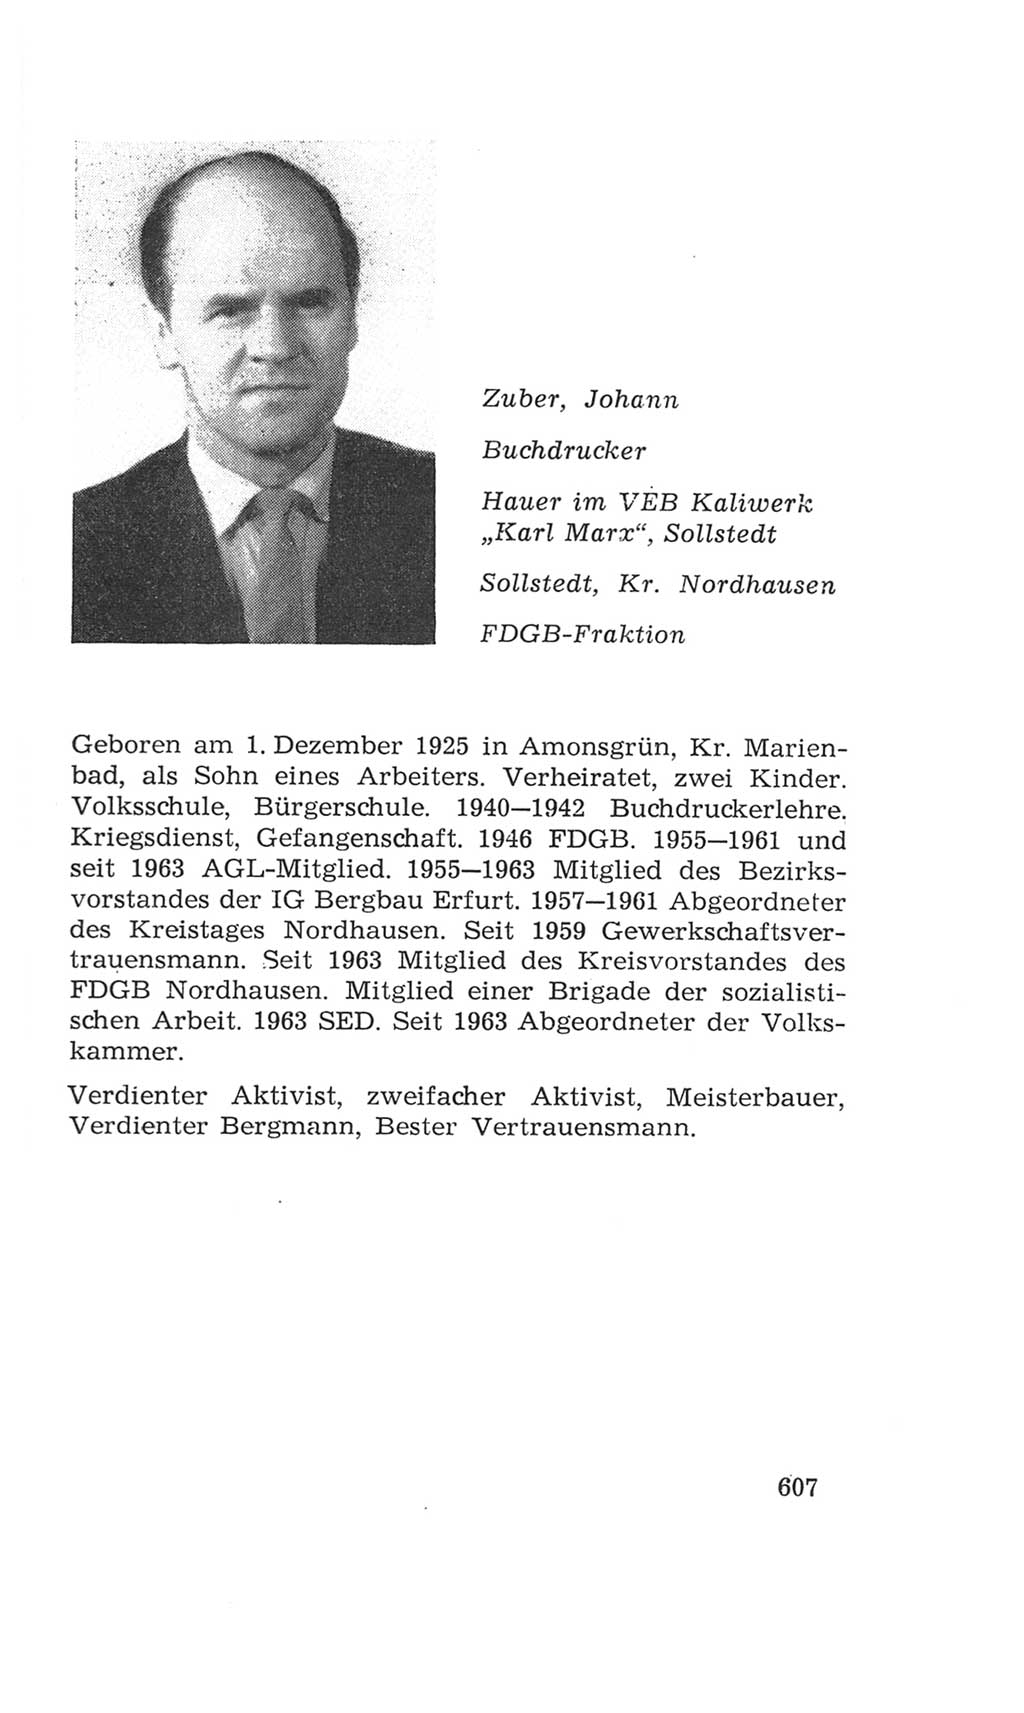 Volkskammer (VK) der Deutschen Demokratischen Republik (DDR), 4. Wahlperiode 1963-1967, Seite 607 (VK. DDR 4. WP. 1963-1967, S. 607)